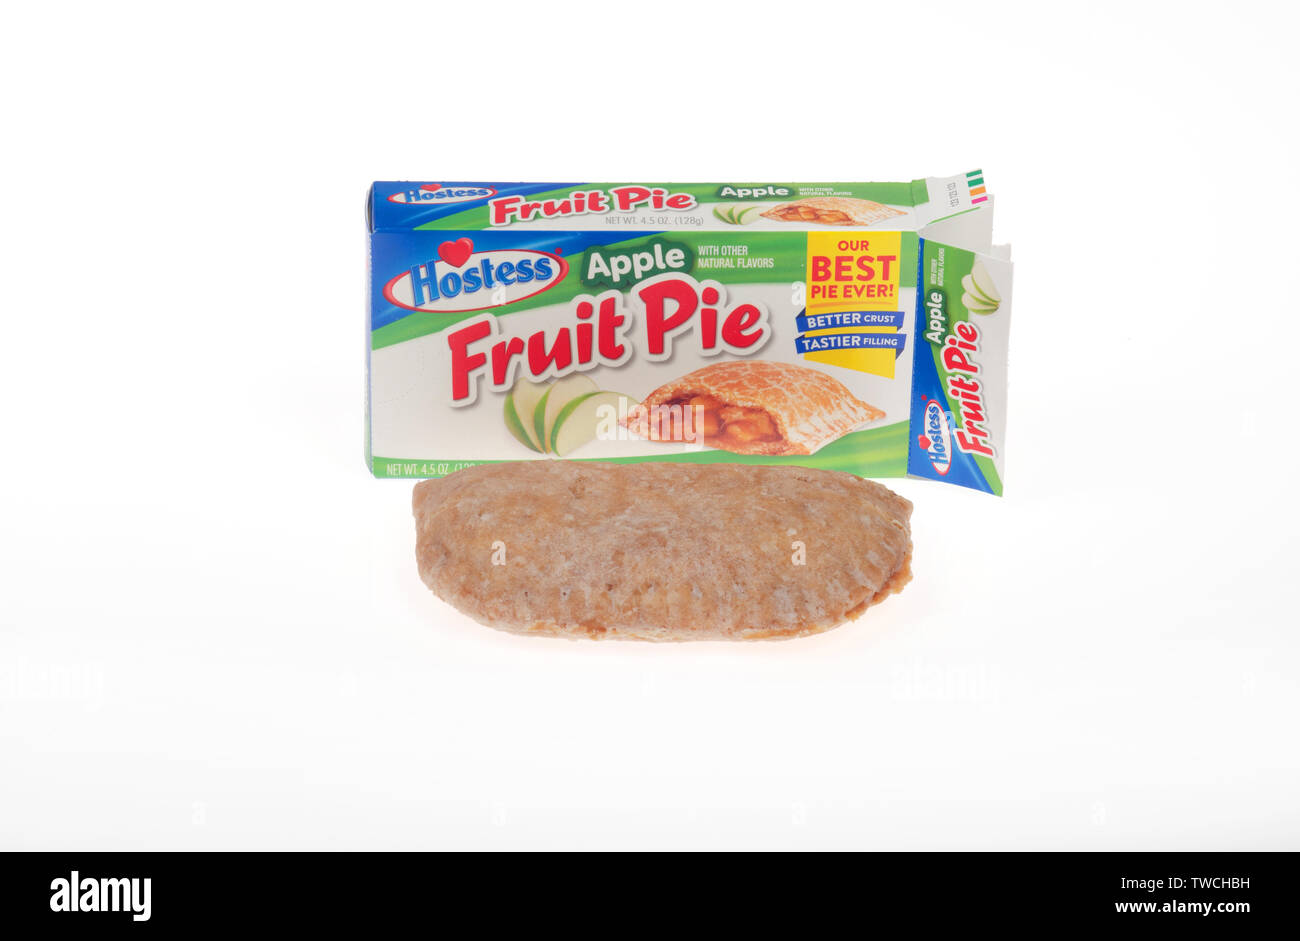 Hostess marca apple torta di frutta con confezione aperta che mostra la torta Foto Stock